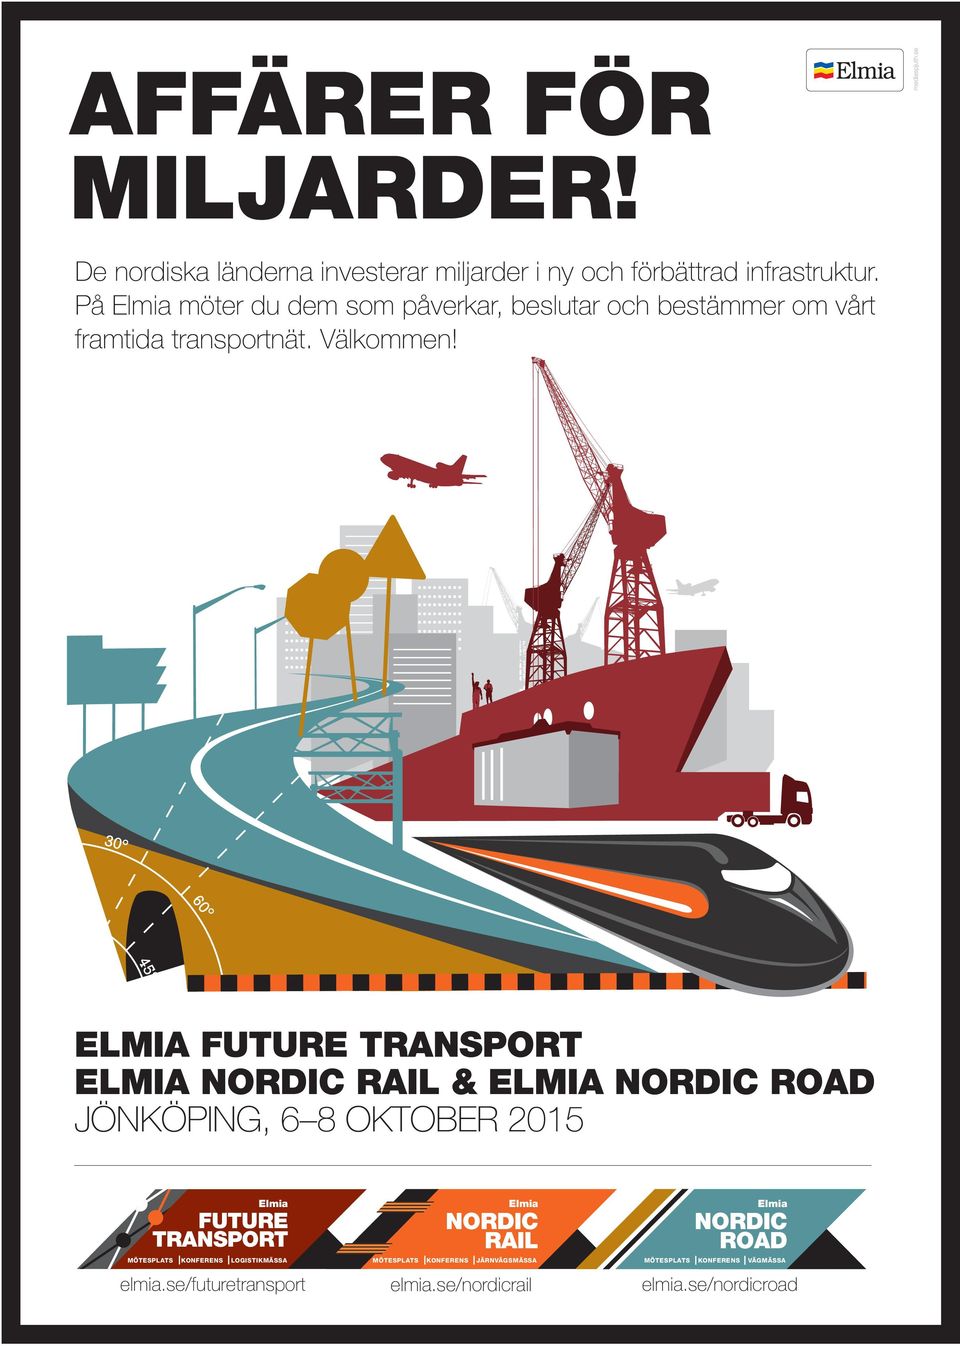 ELMIA FUTURE TRANSPORT ELMIA NORDIC RAIL & ELMIA NORDIC ROAD JÖNKÖPING, 6 8 OKTOBER 2015 Elma FUTURE TRANSPORT MÖTESPLATS